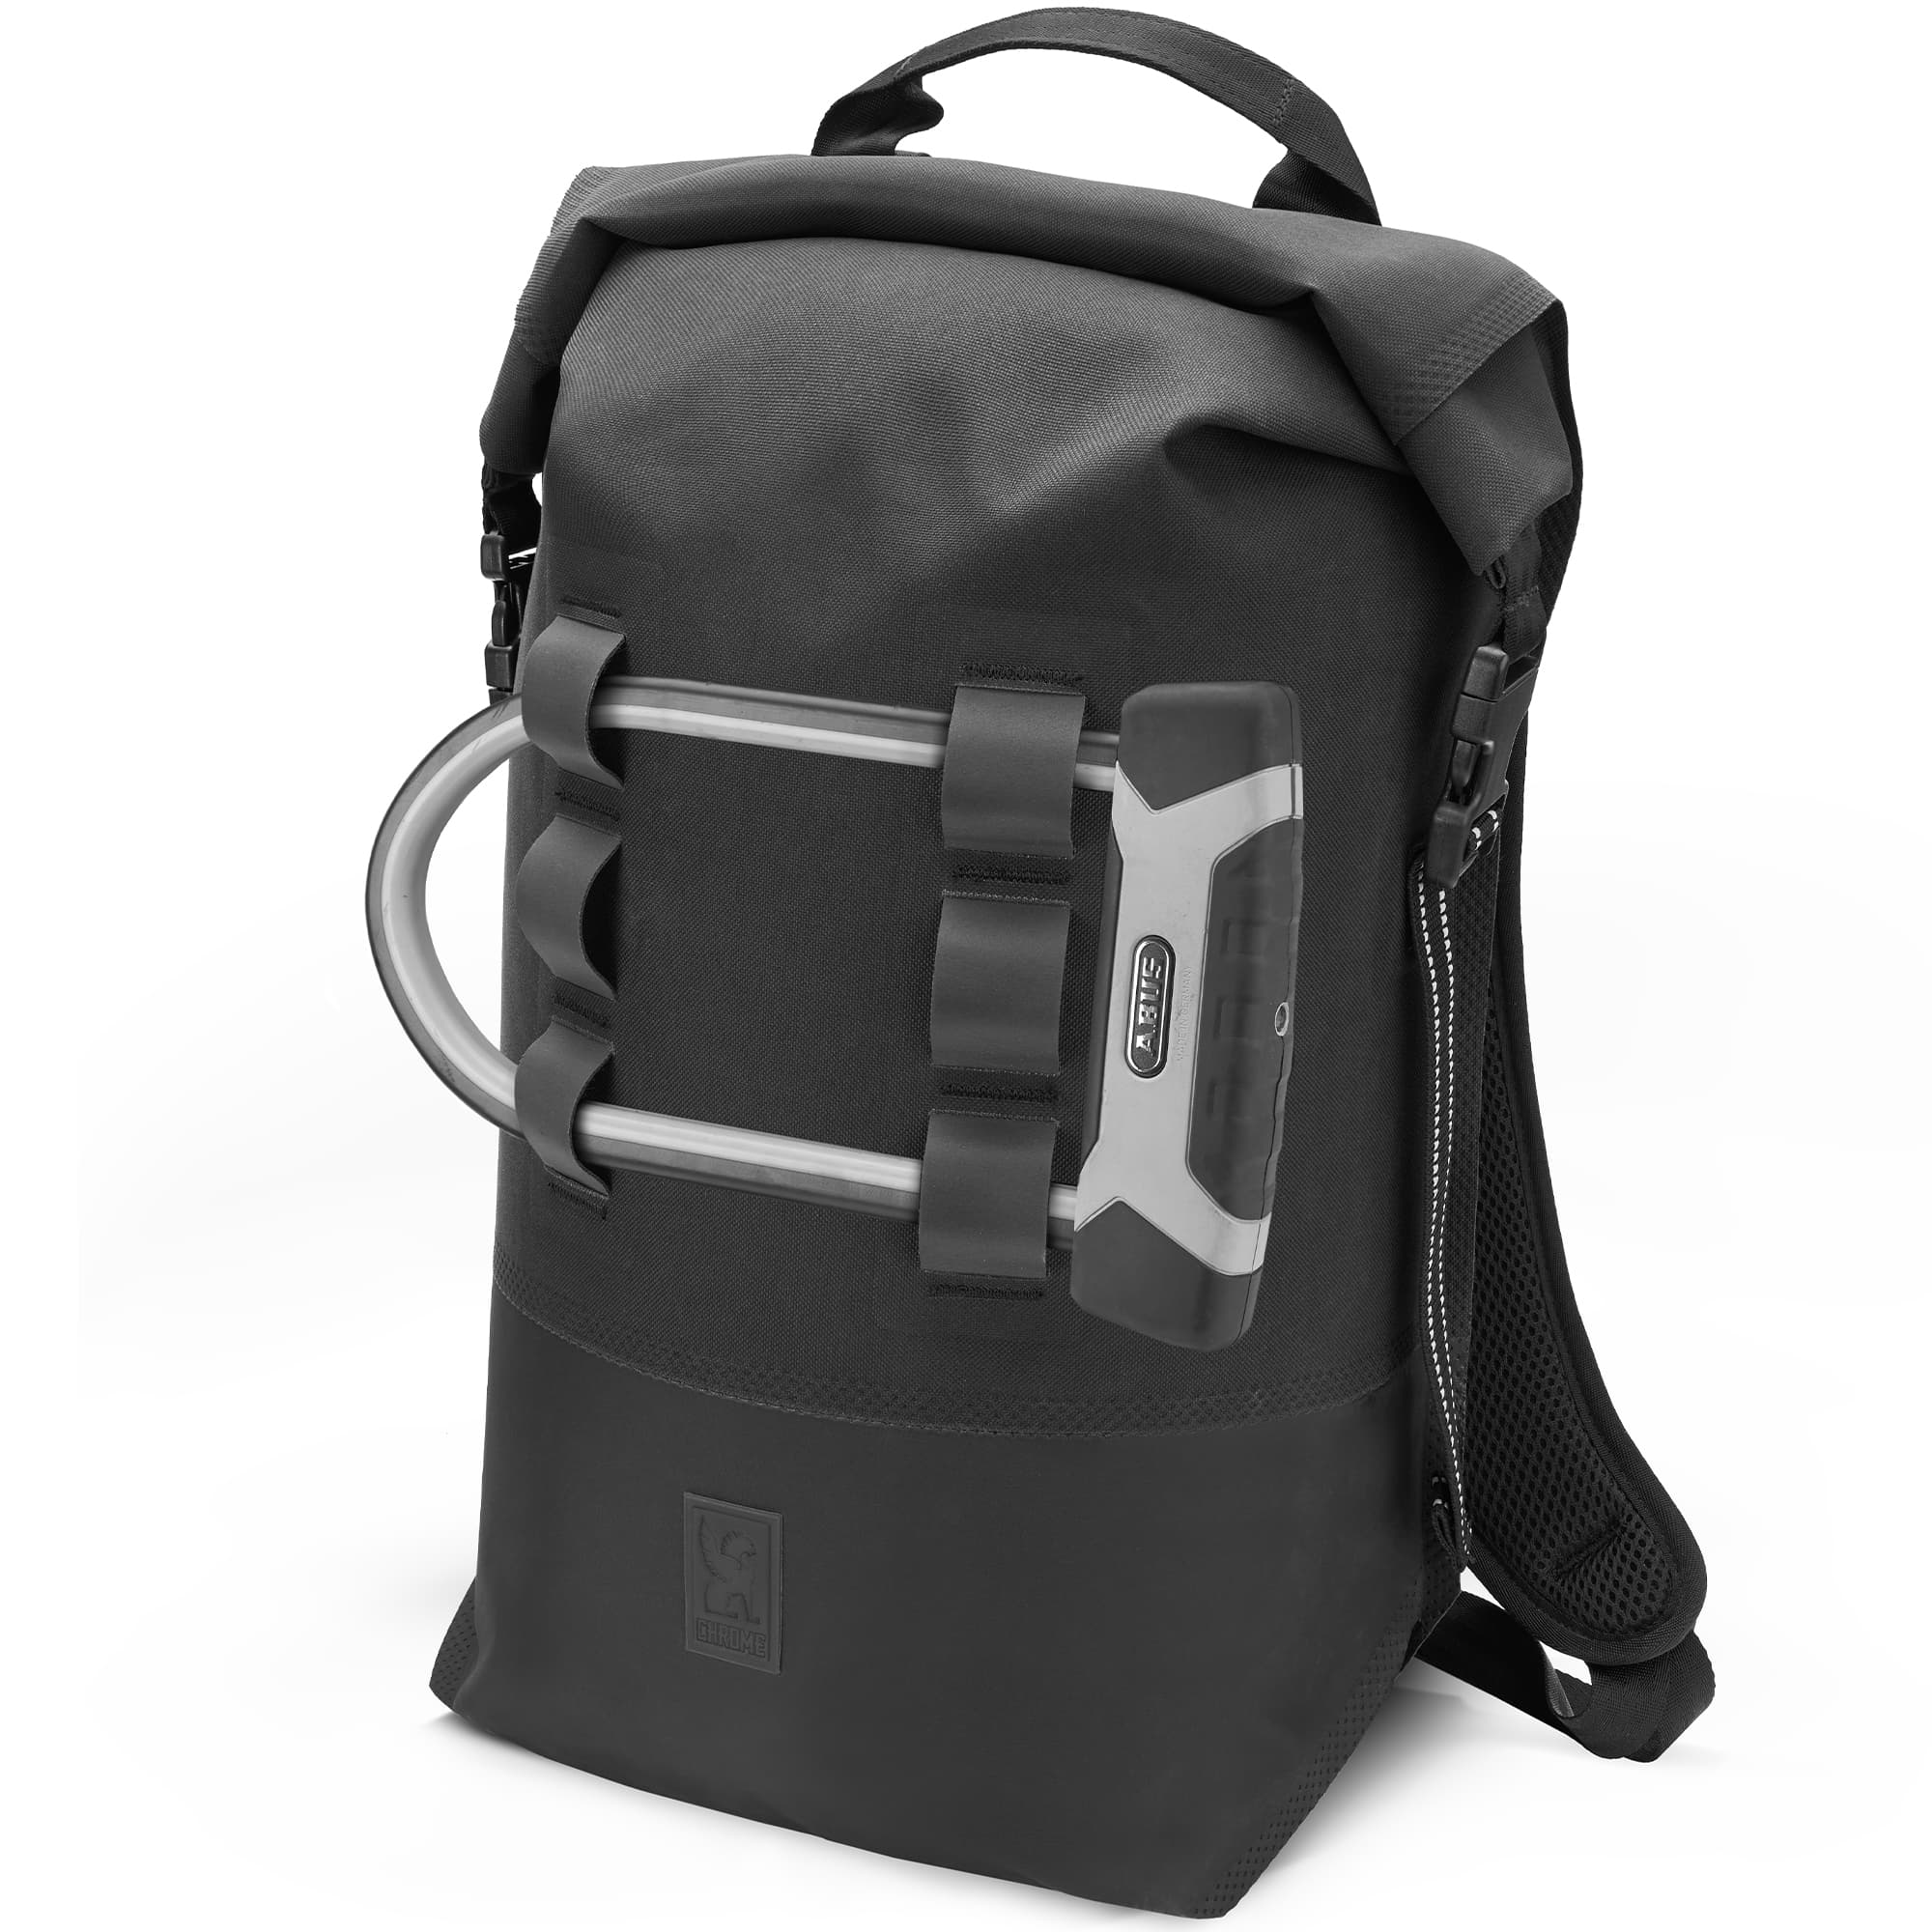 Waterproof 20L backpack in black u-lock holder #color_black